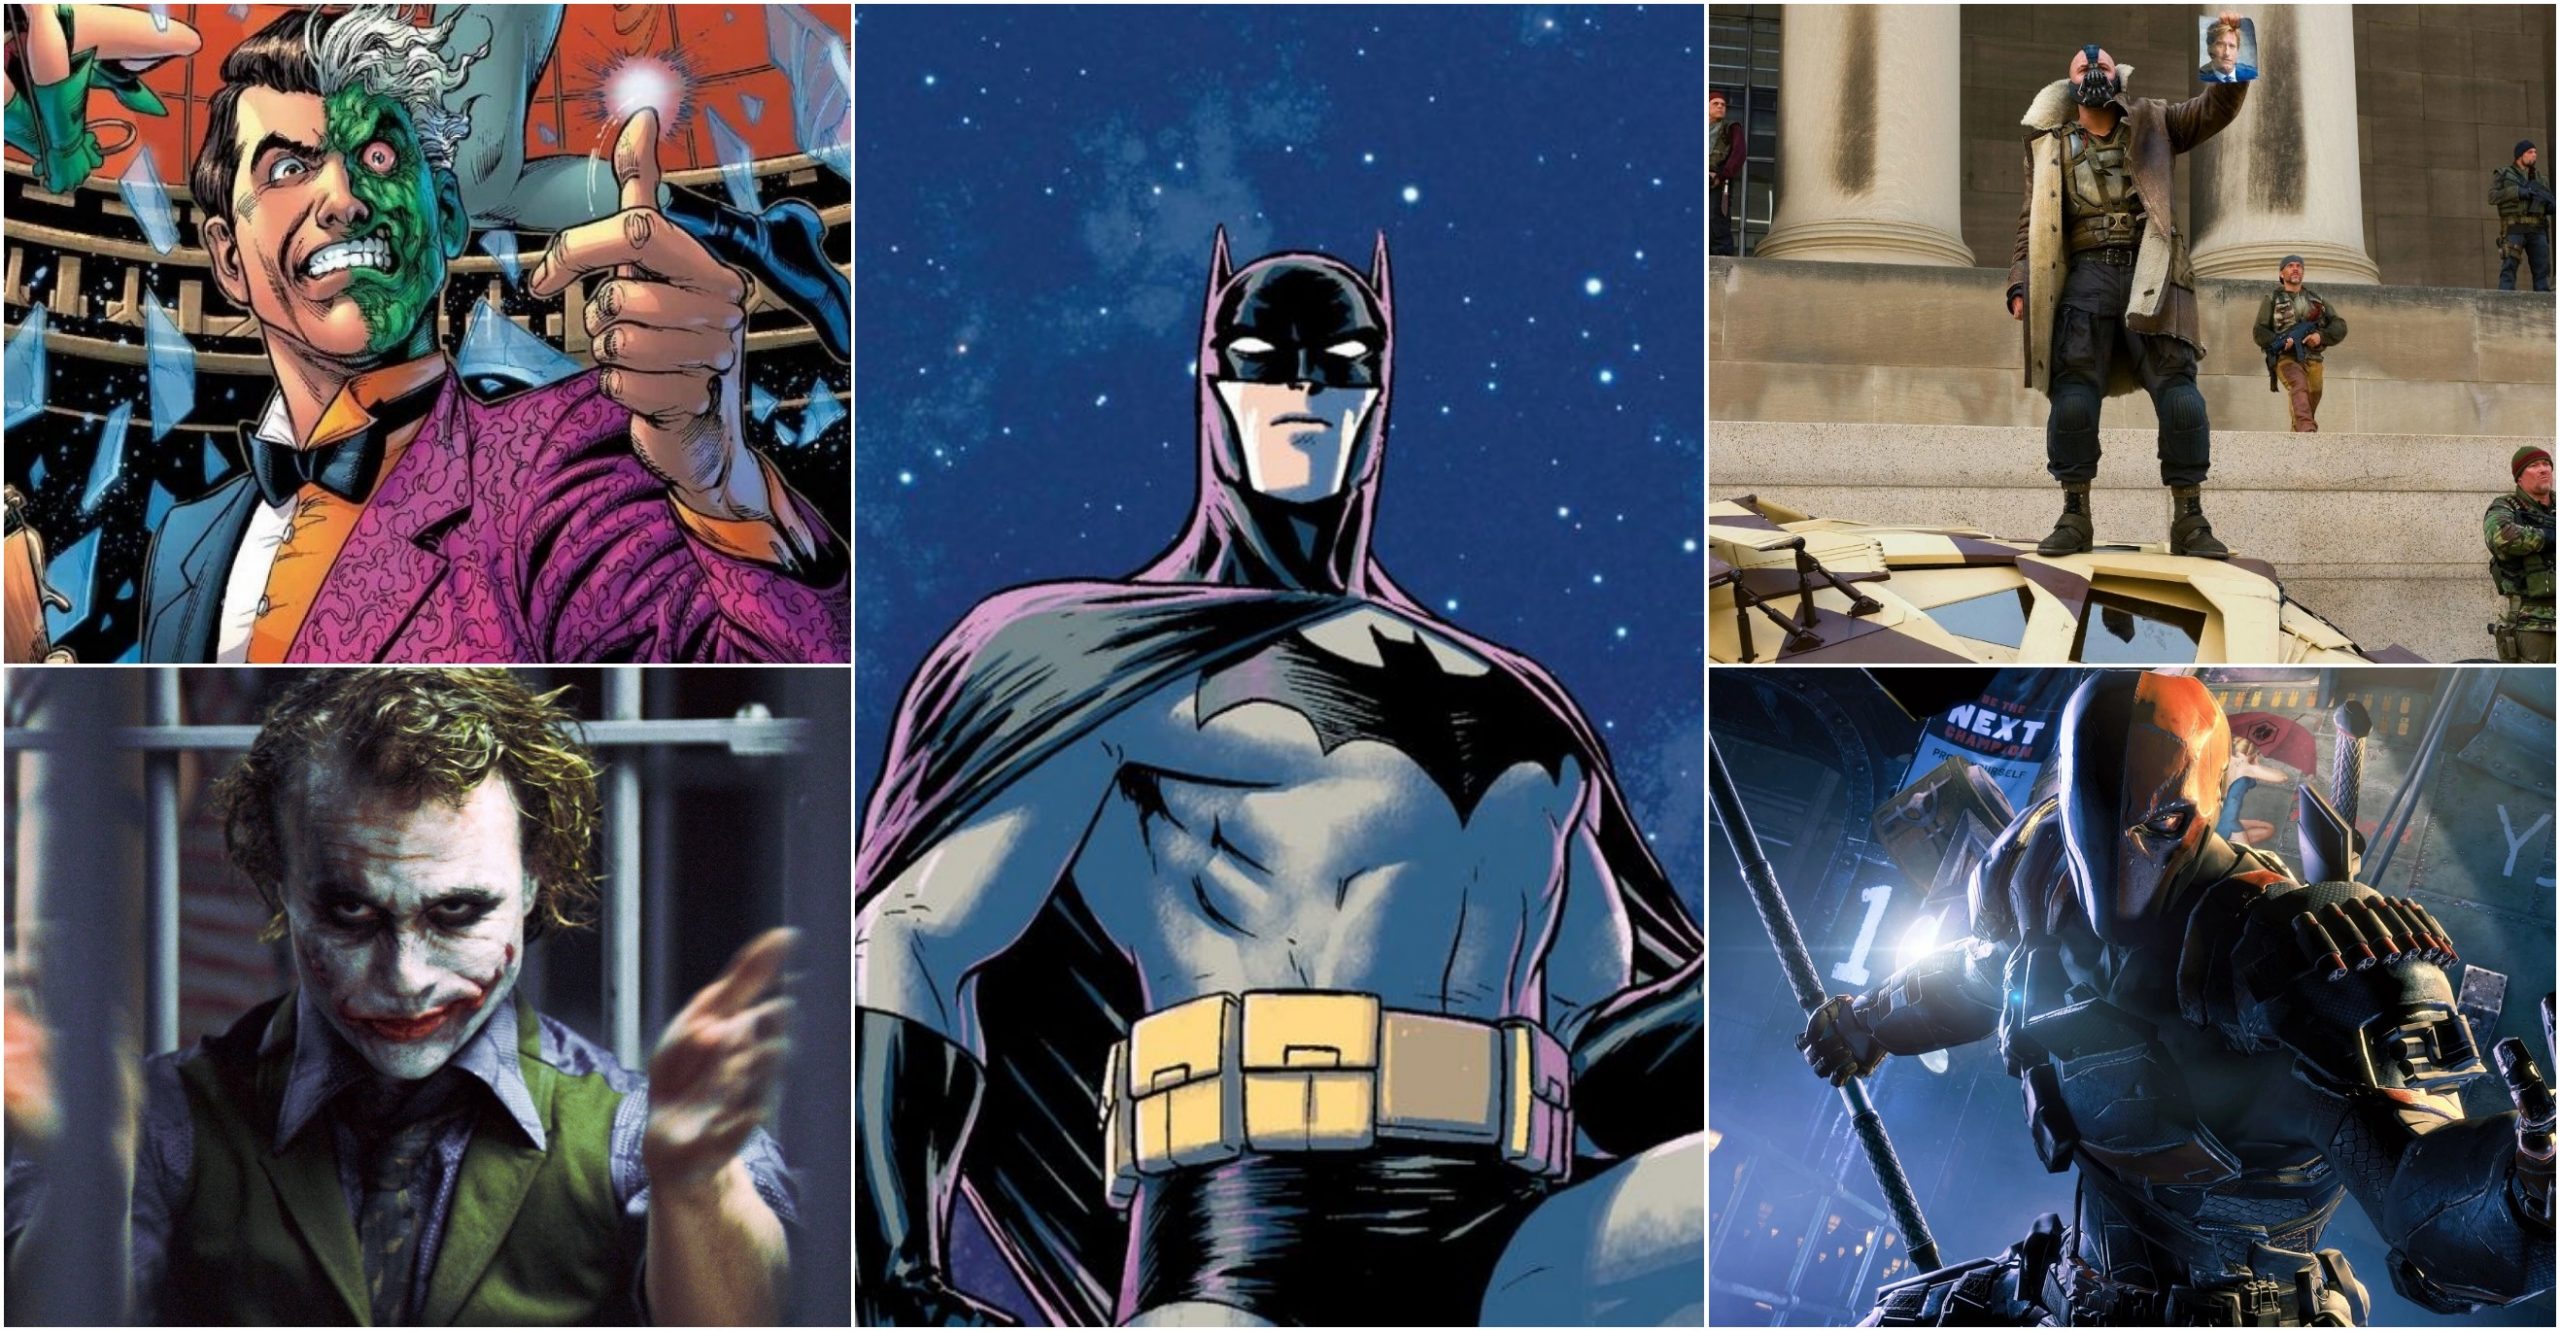 Đây là những kẻ thù vĩ đại nhất của Batman tại Gotham – Joker vẫn là kẻ thù số 1